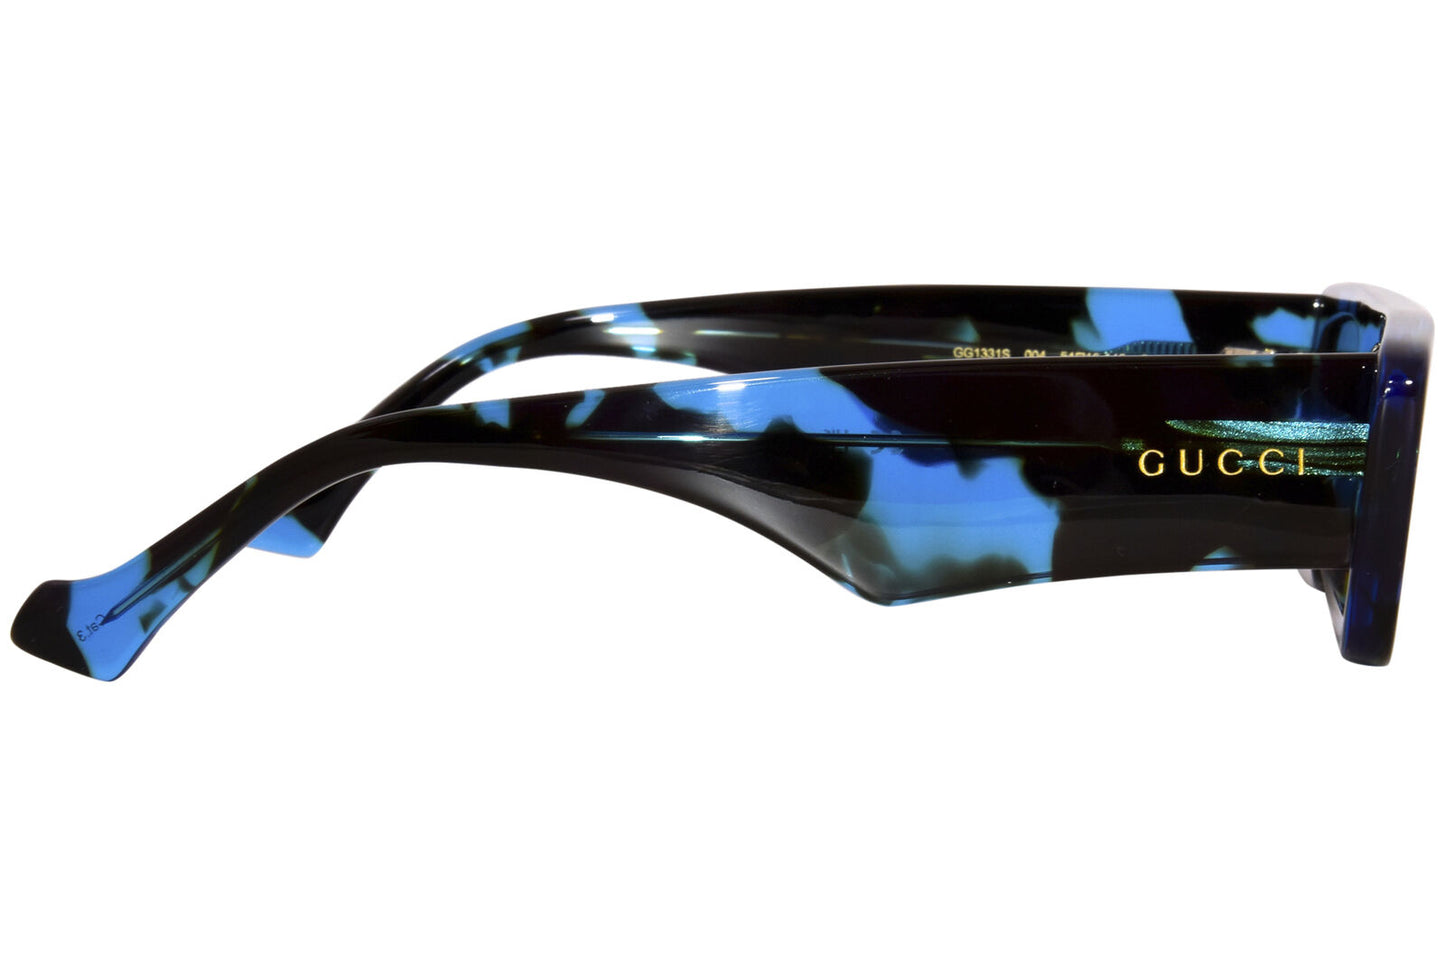 Gucci GG1331S-004 54mm New Sunglasses